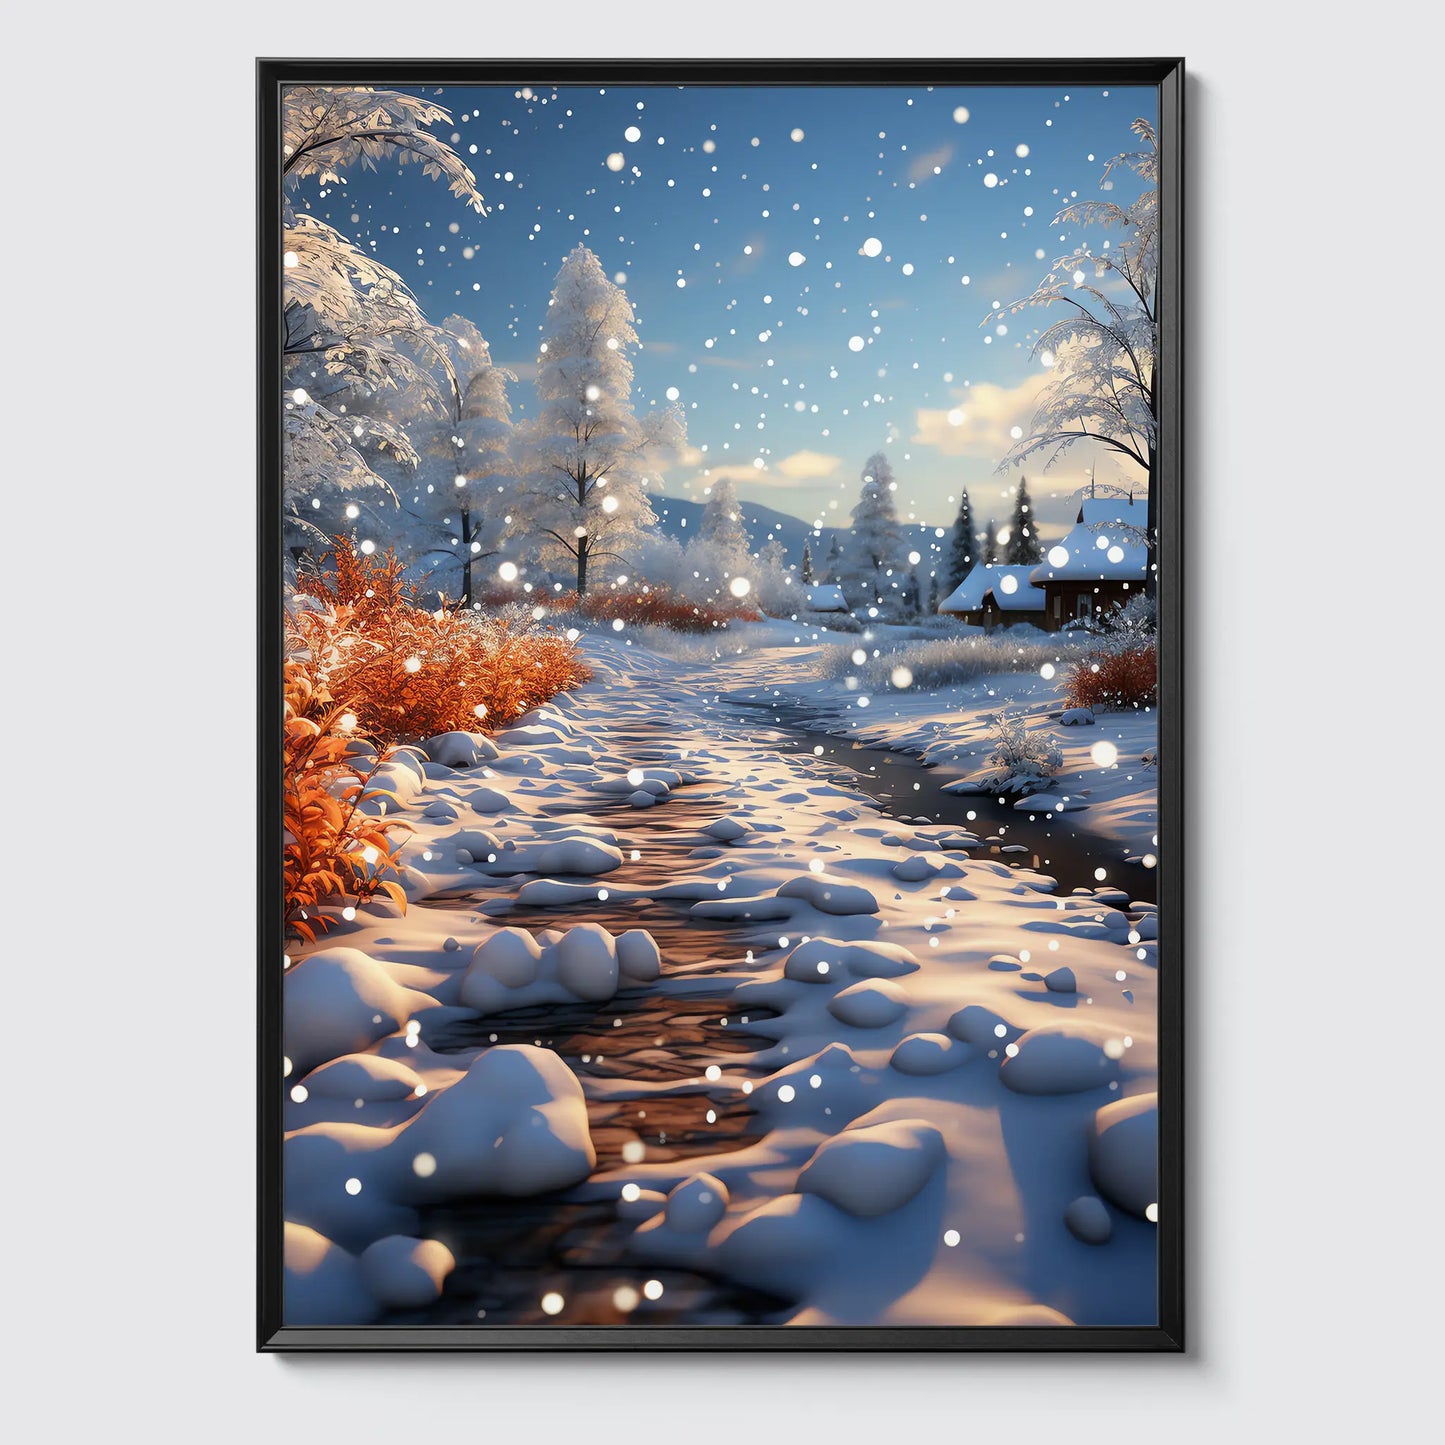 Warme Weihnacht No 1 - Weihnachten - Poster